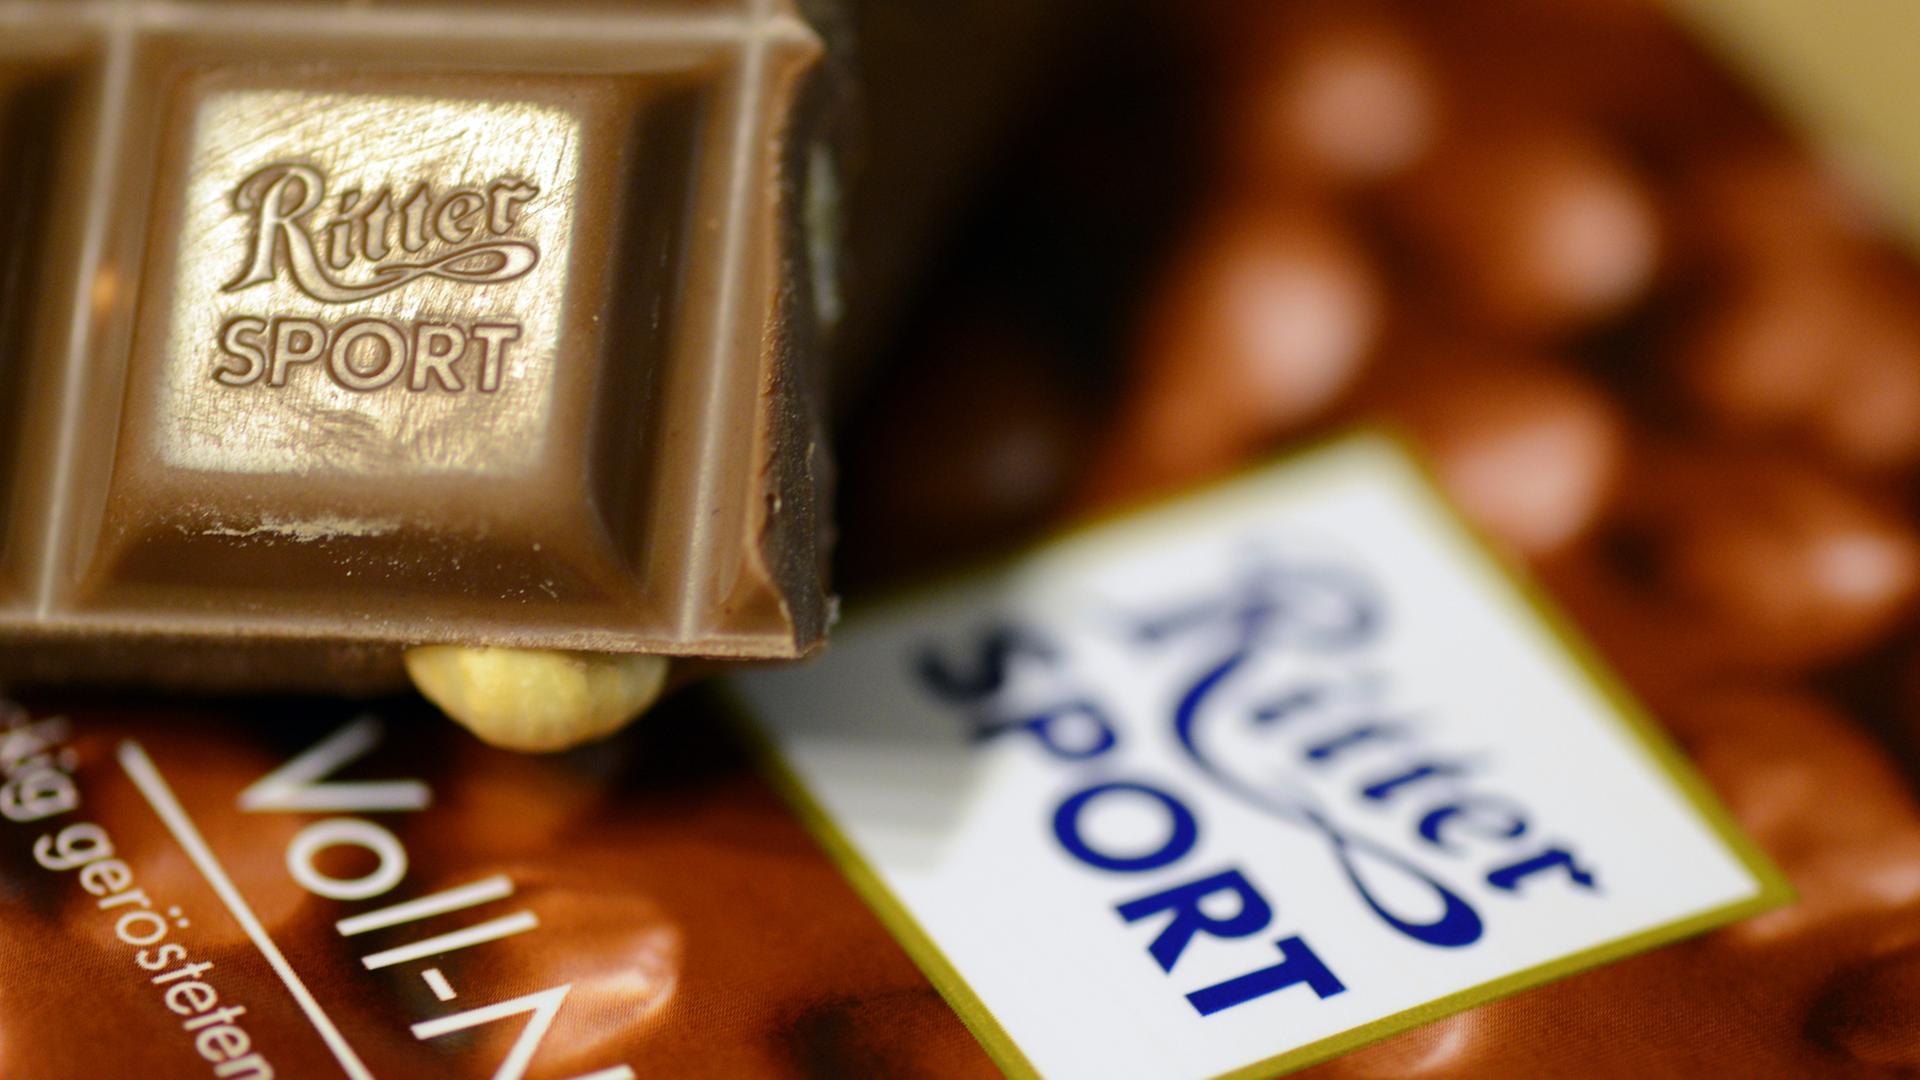 Das Bild zeigt ein kleines Stück Voll-Nuss-Schokolade der Marke Ritter Sport. Es liegt auf einer Verpackung der Schokoladentafel.